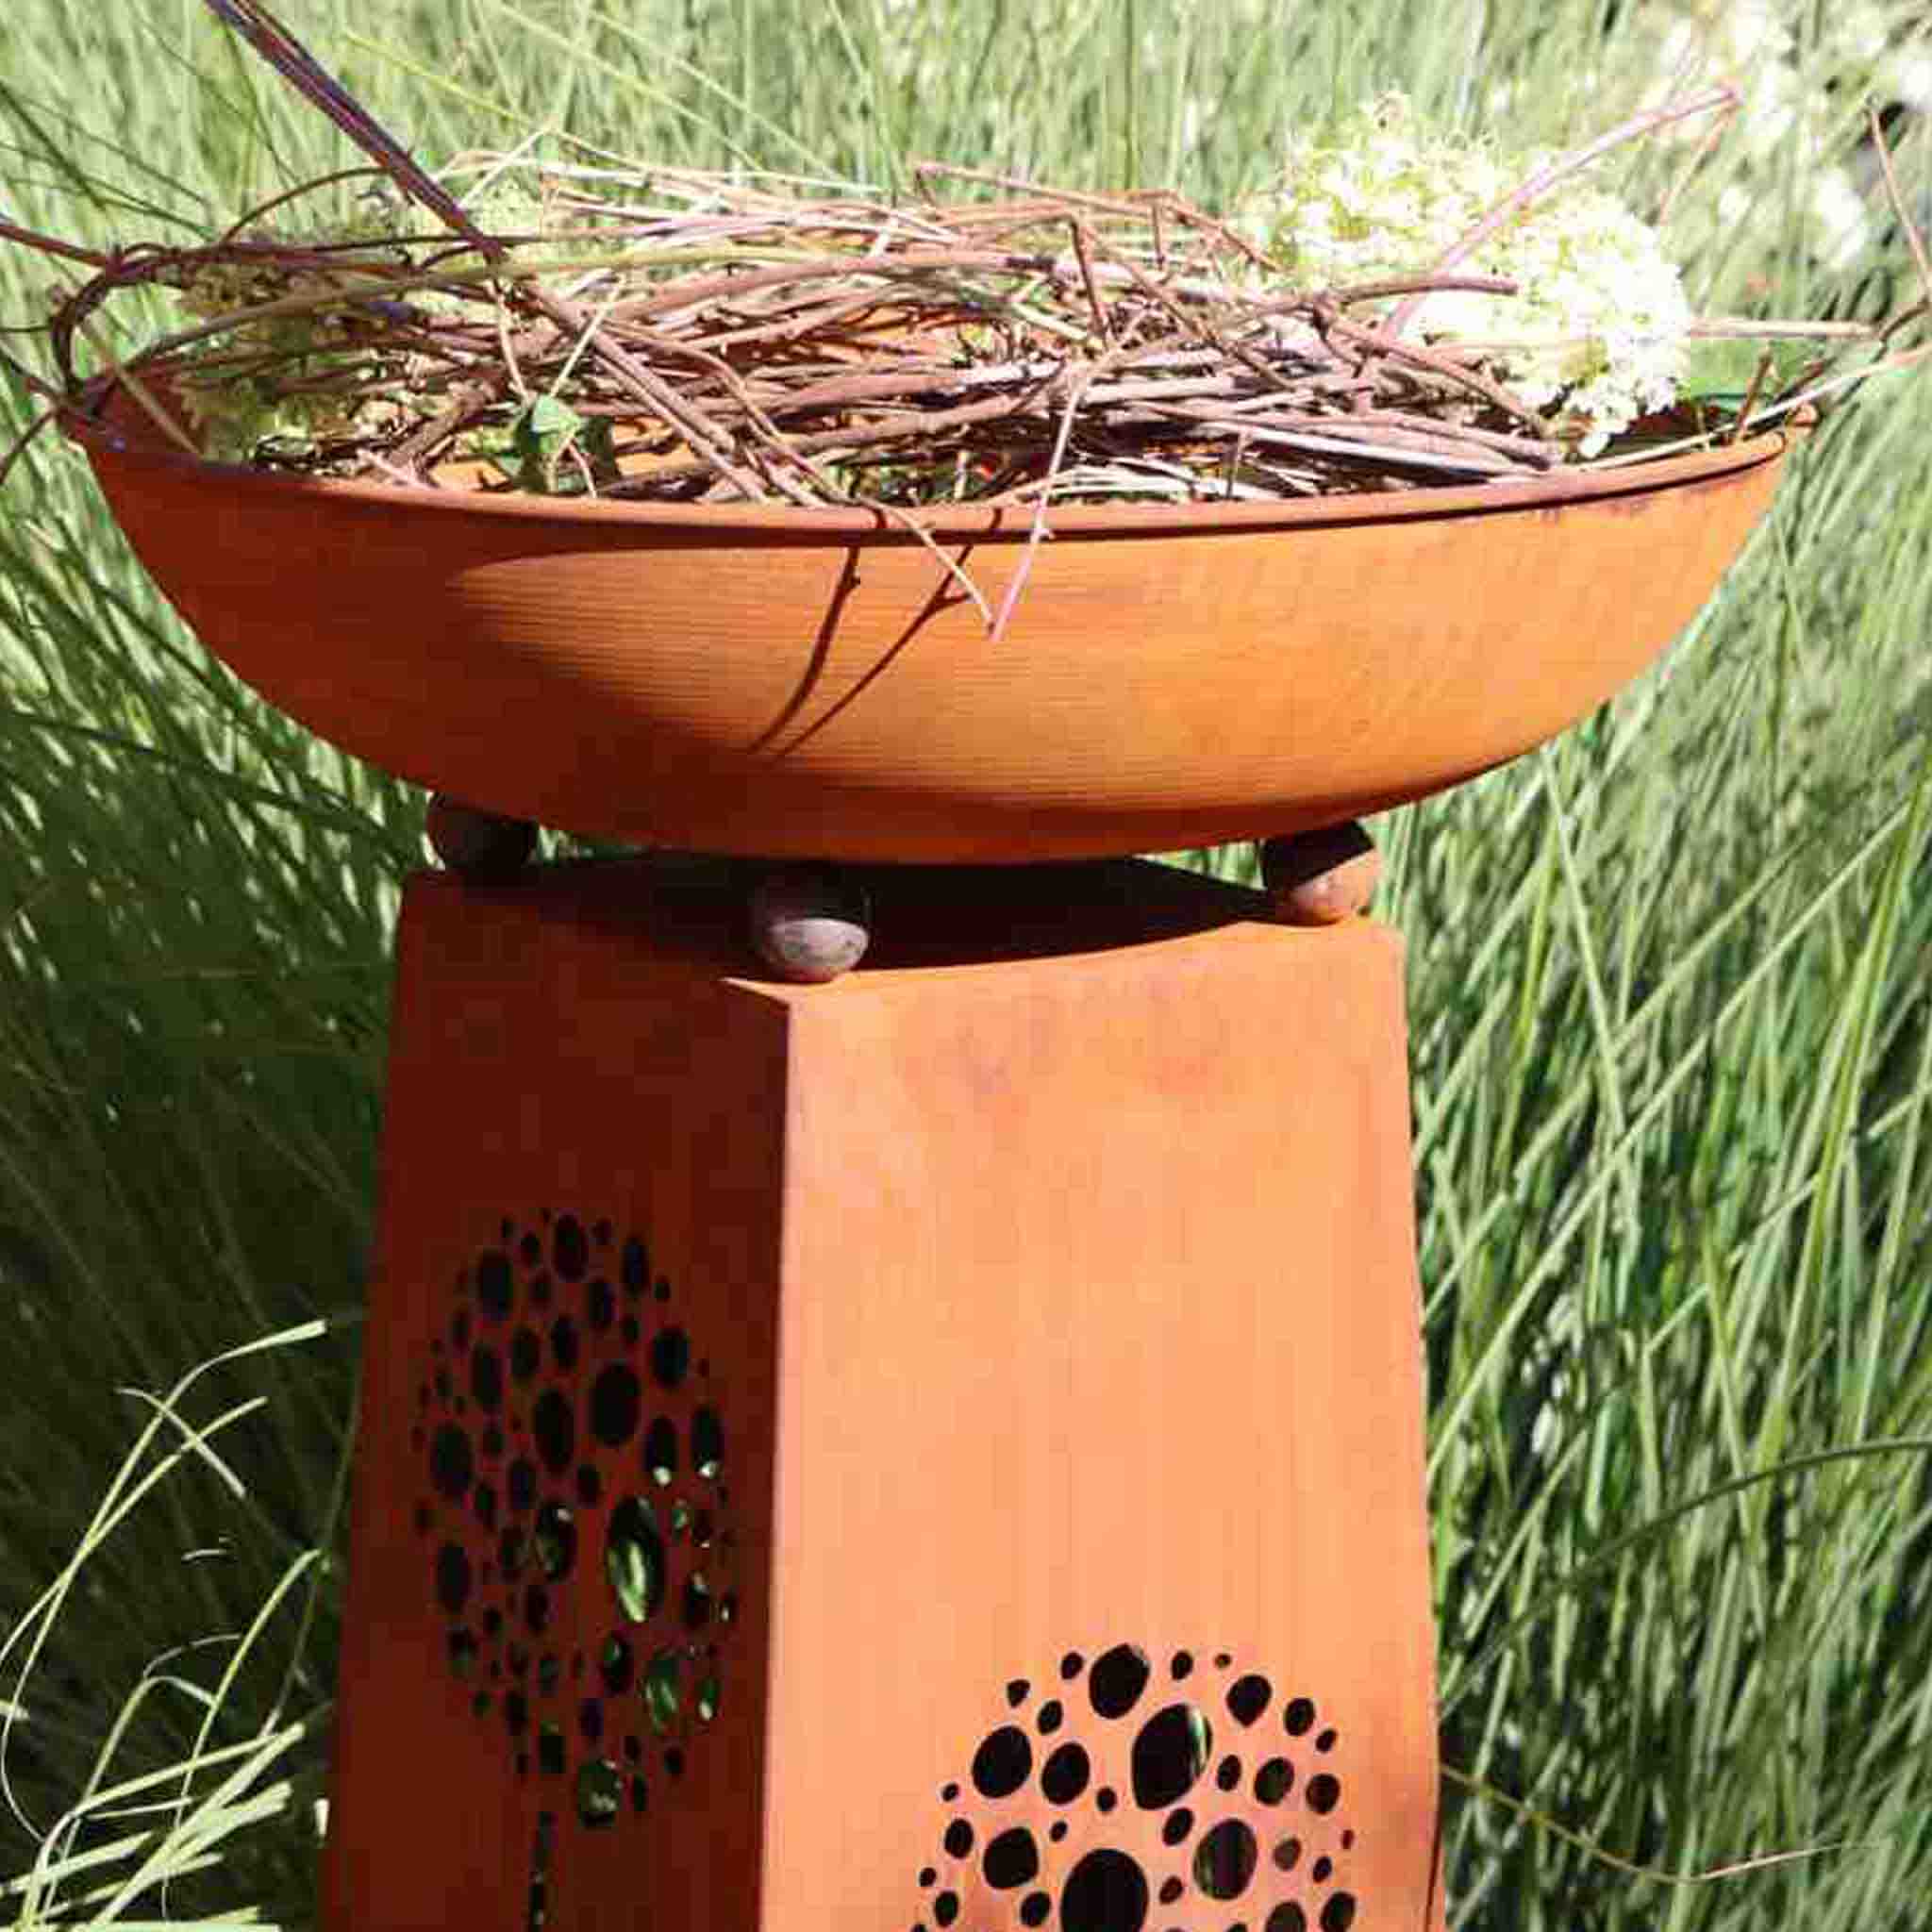 Rustikale große Metallschale aus Rost - ideal zum Bepflanzen oder als dekoratives Element in Ihrem Garten